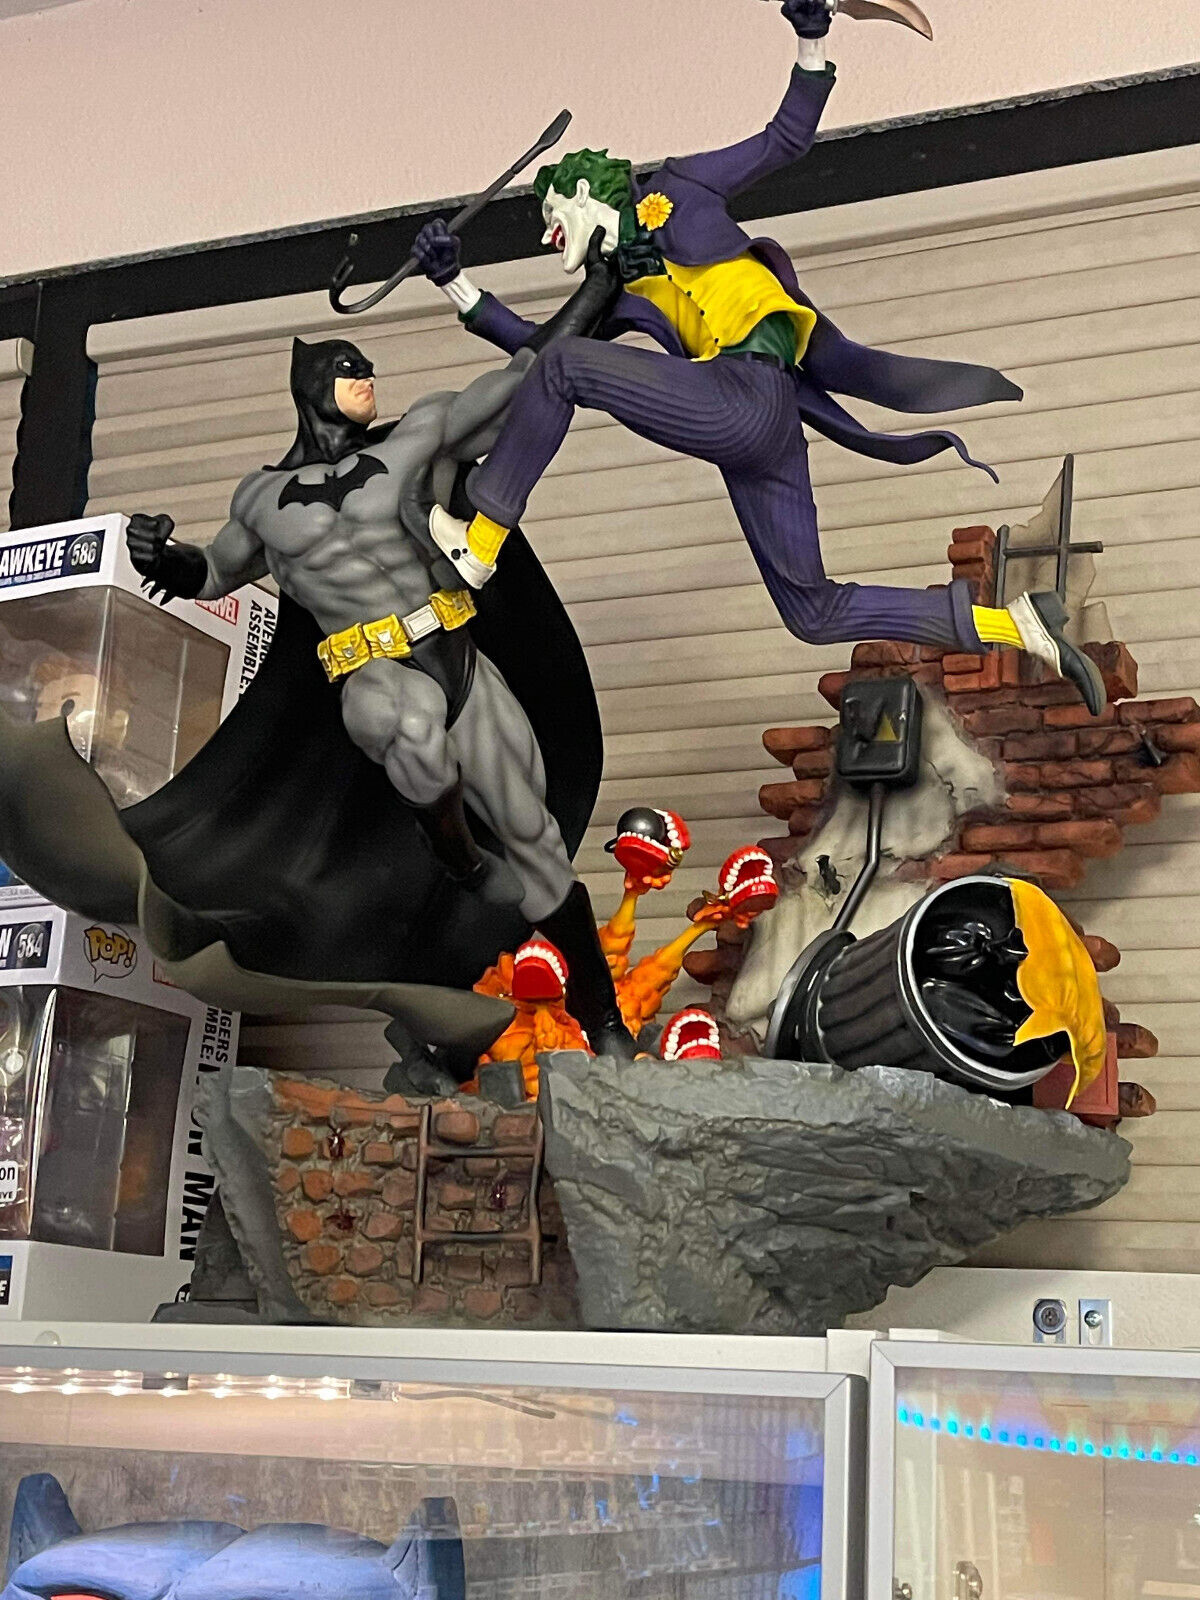 DC - Figurine résine The Batman (film) Le Bazar du Bizarre